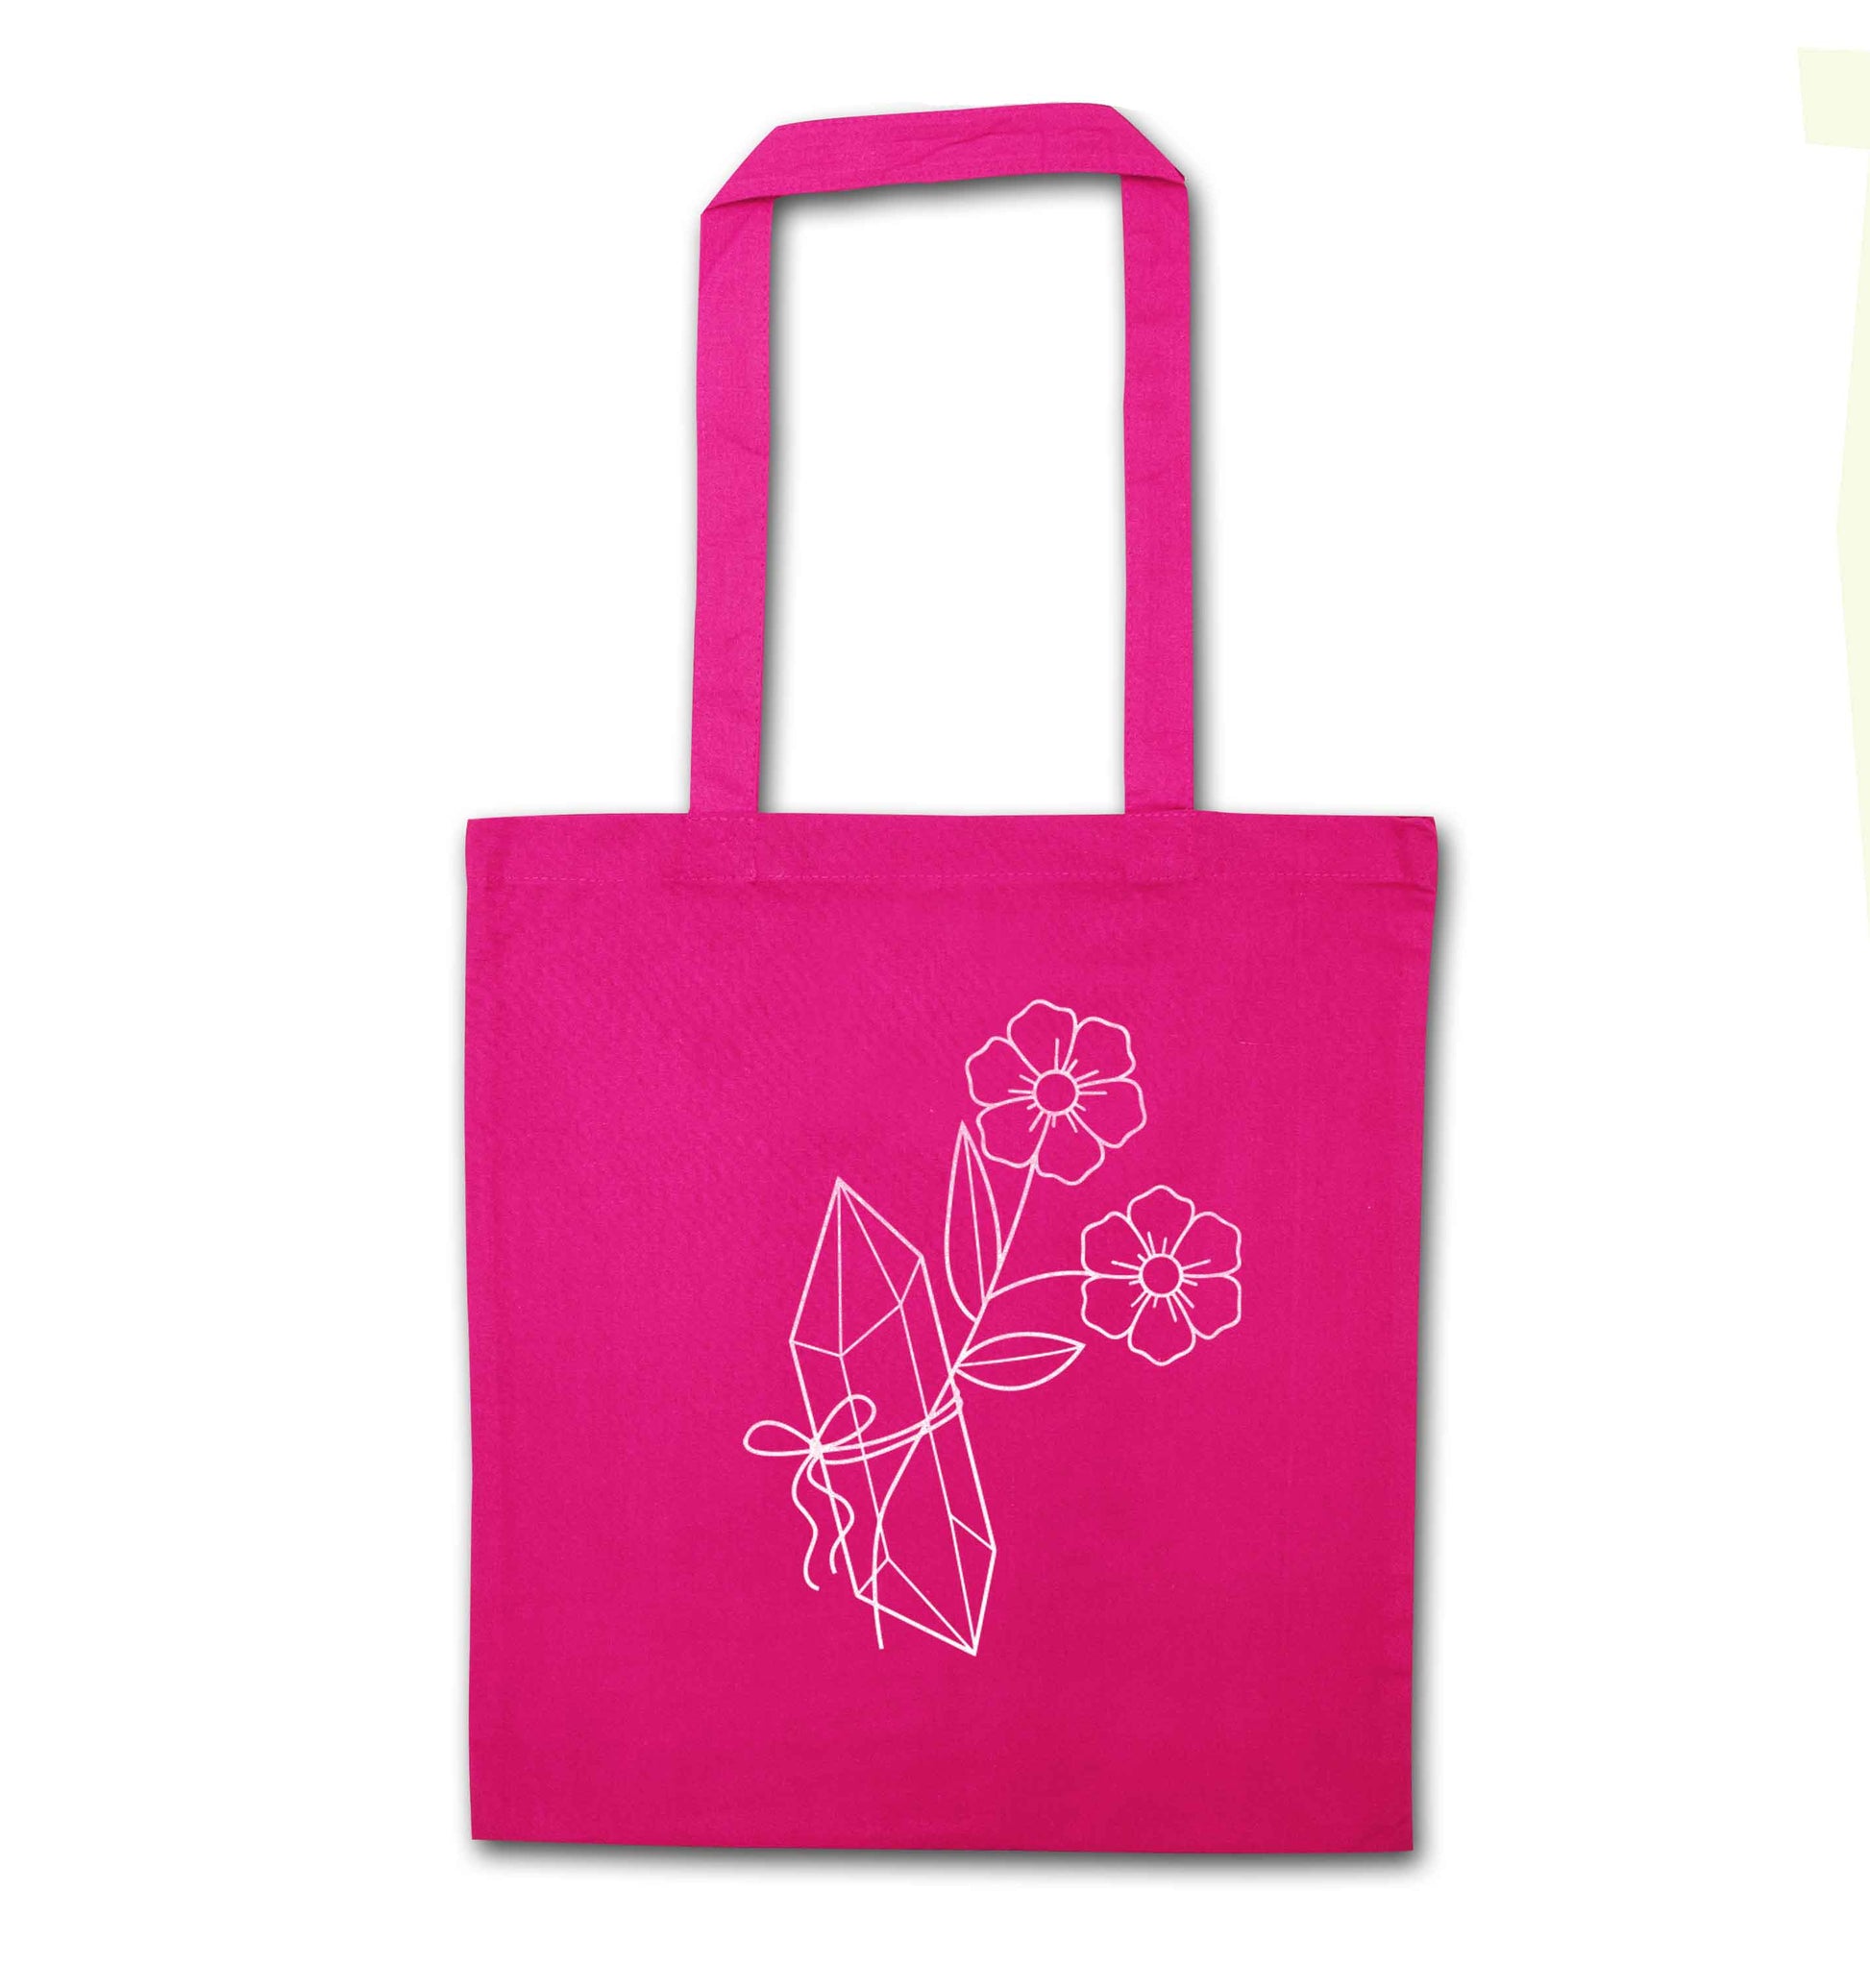 Crystal flower illustration pink tote bag